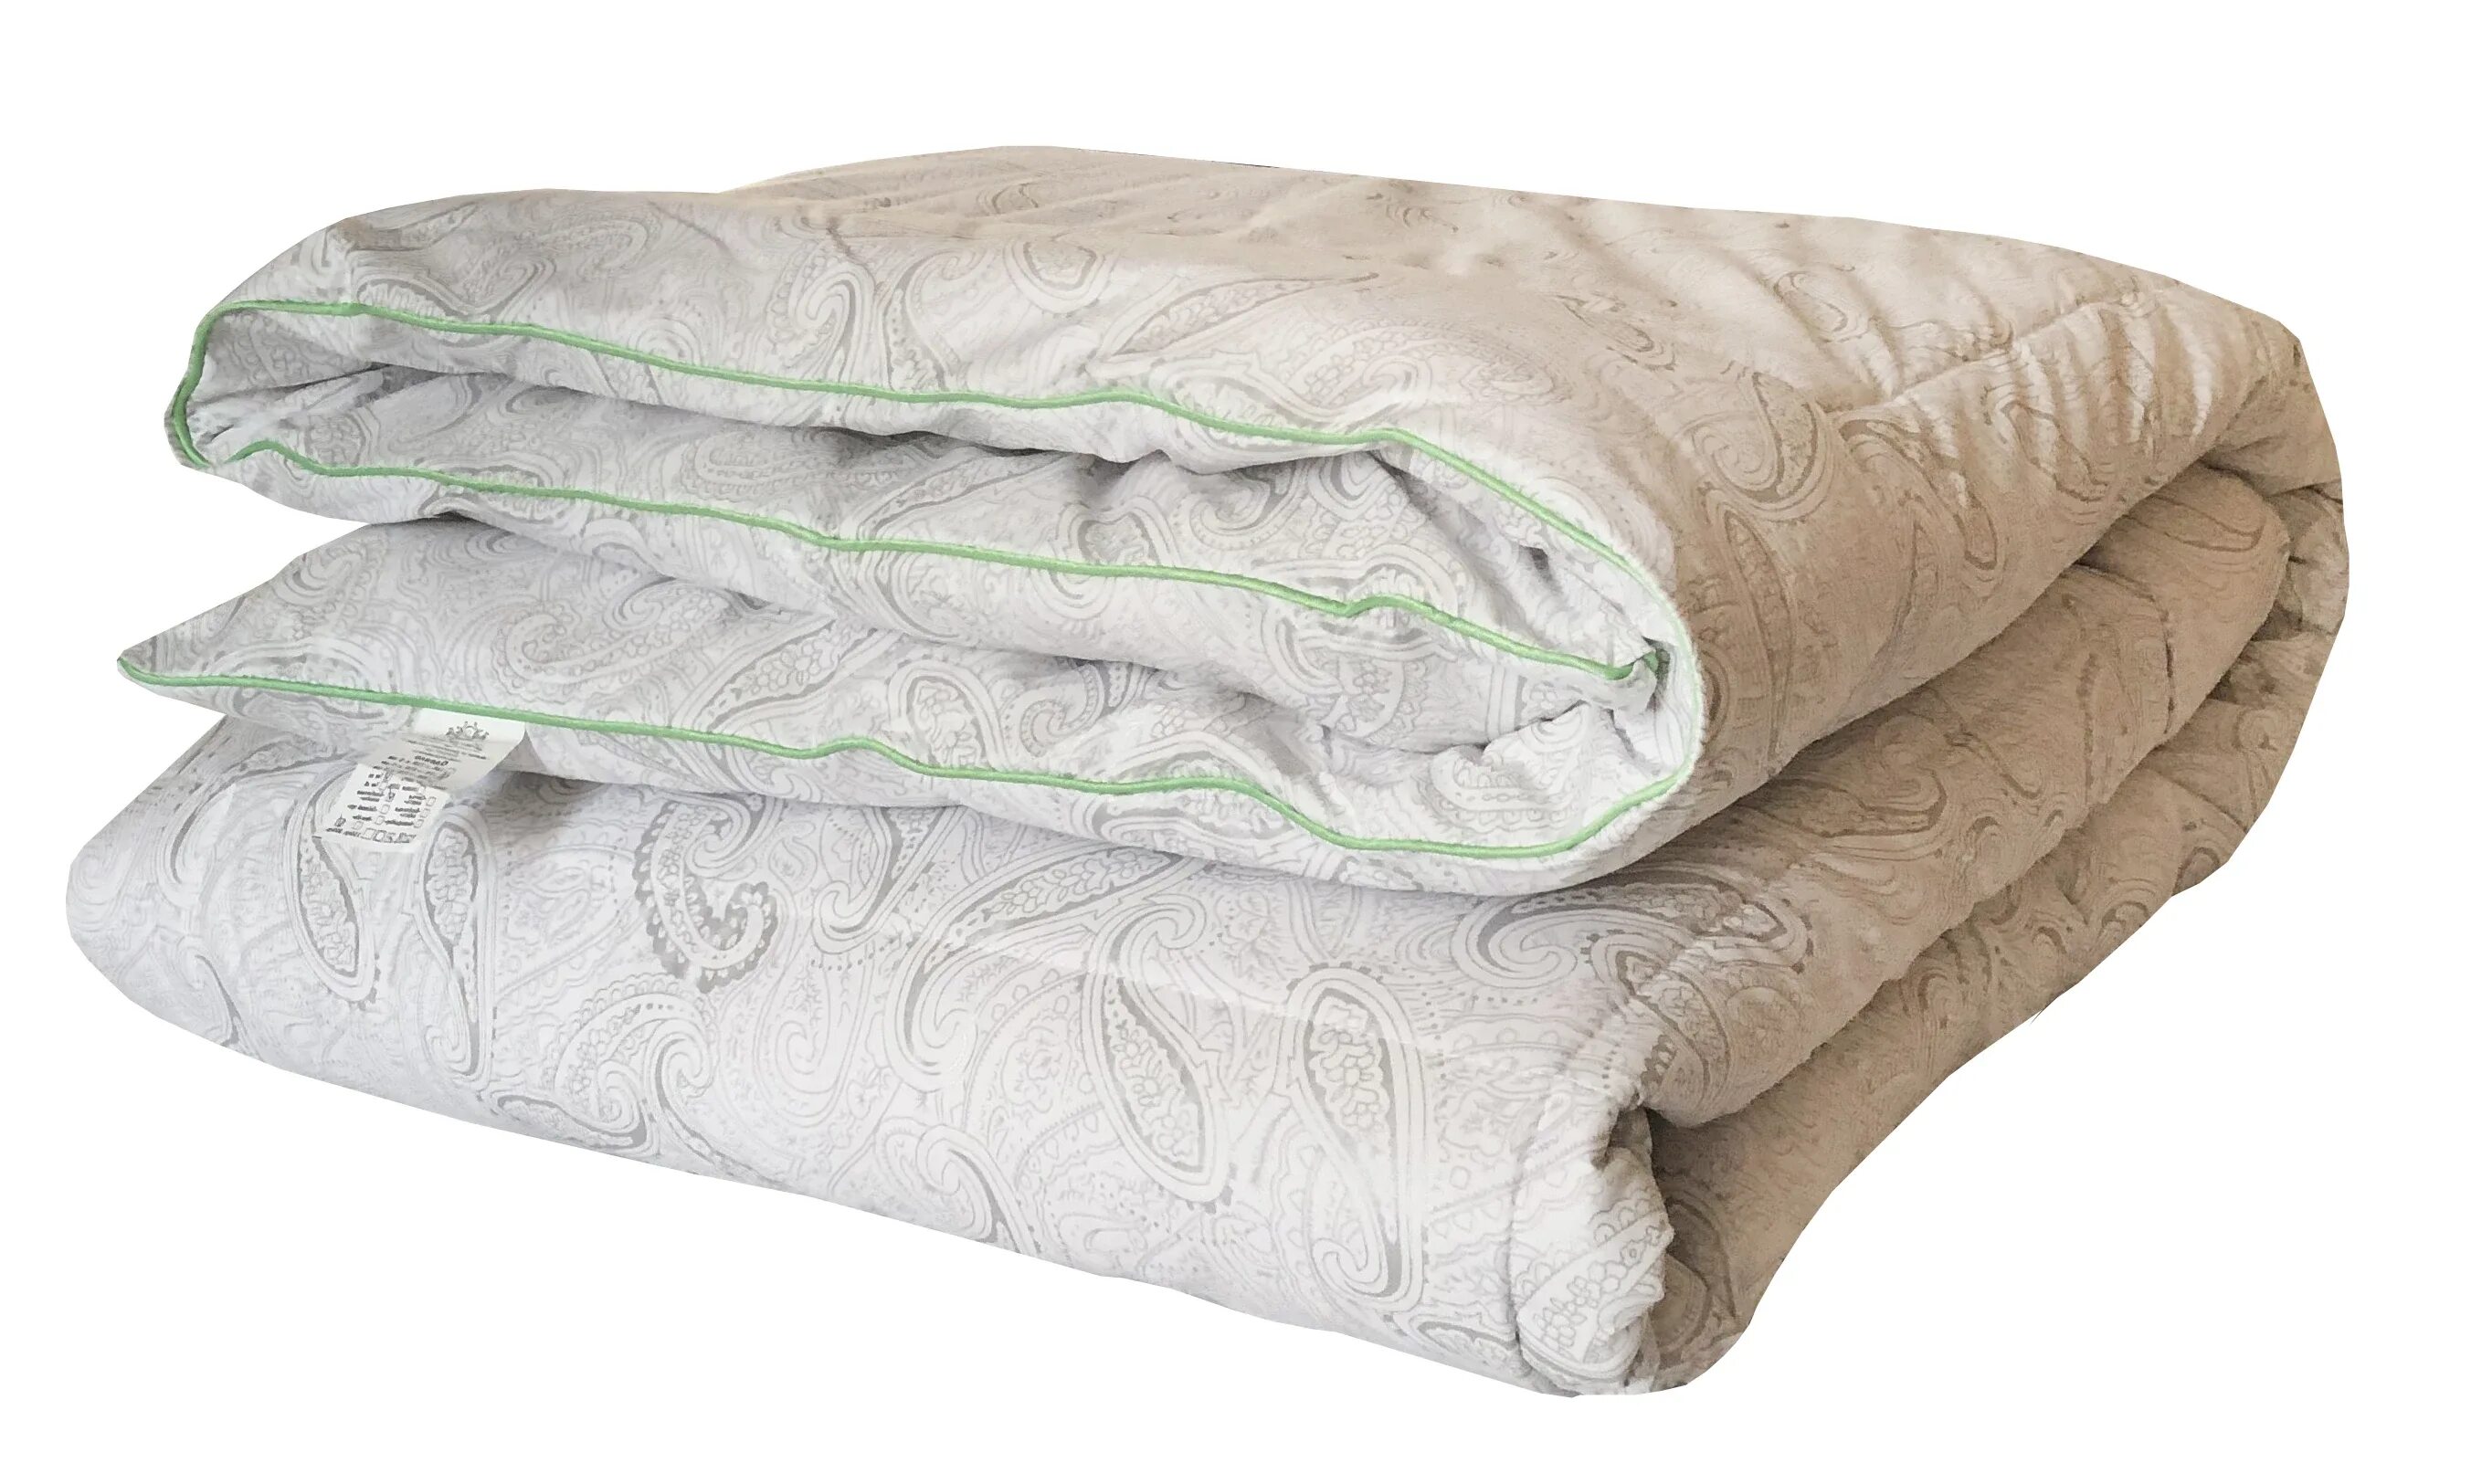 Купить одеяло теплое 1.5. Одеяло Dreamline бамбук зима. Одеяло бамбуковое зимнее. Одеяло бамбуковое 1.5 спальное. Одеяло бамбук 1.5 спальное теплое.